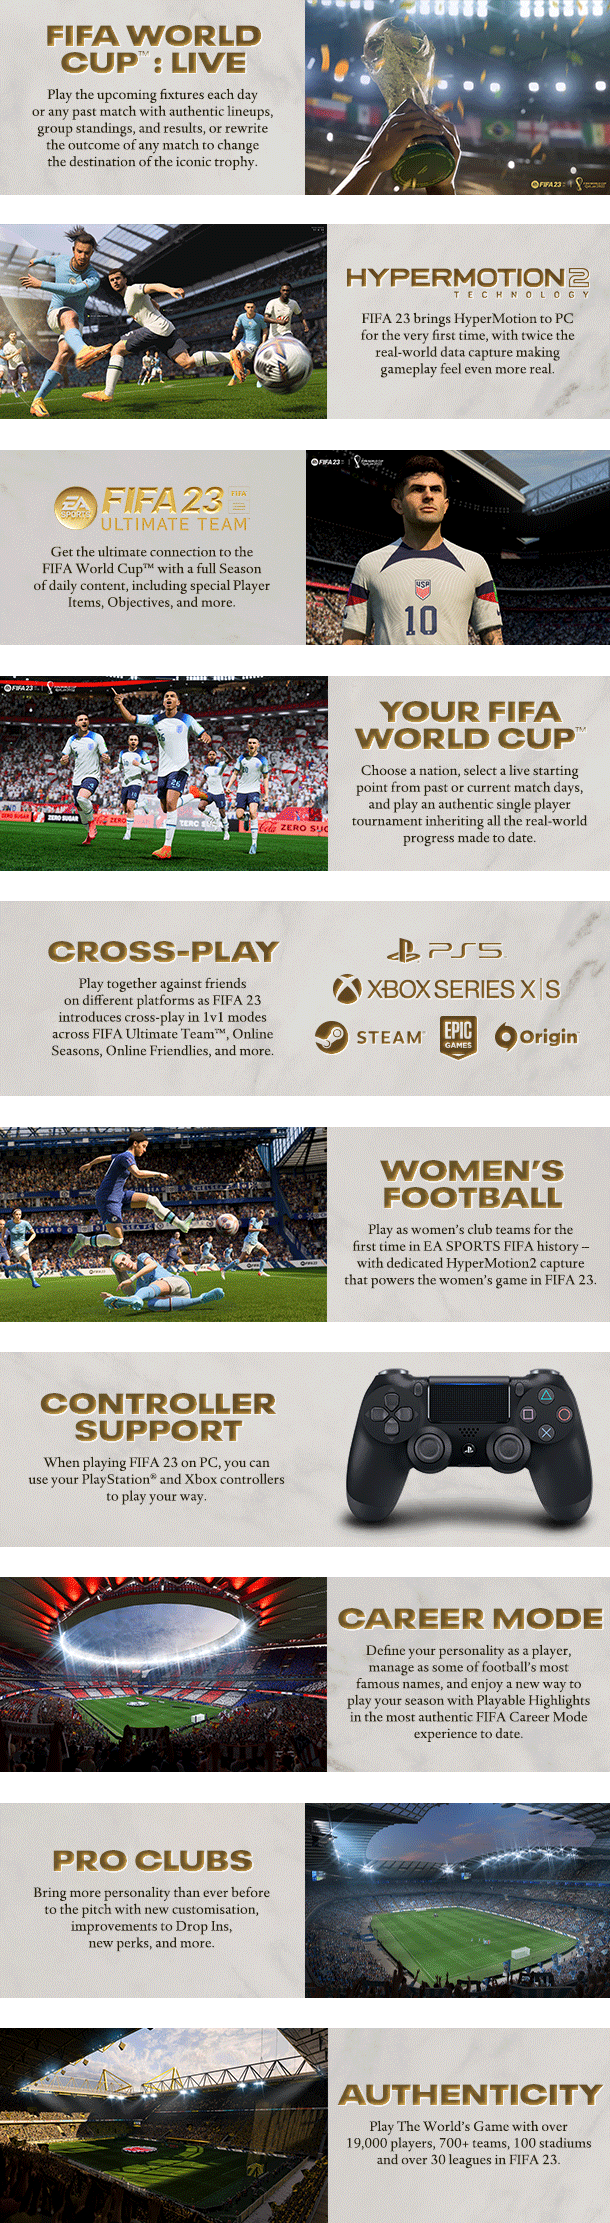 FIFA 23 - STANDARD EDITION - Xbox One [Digital]